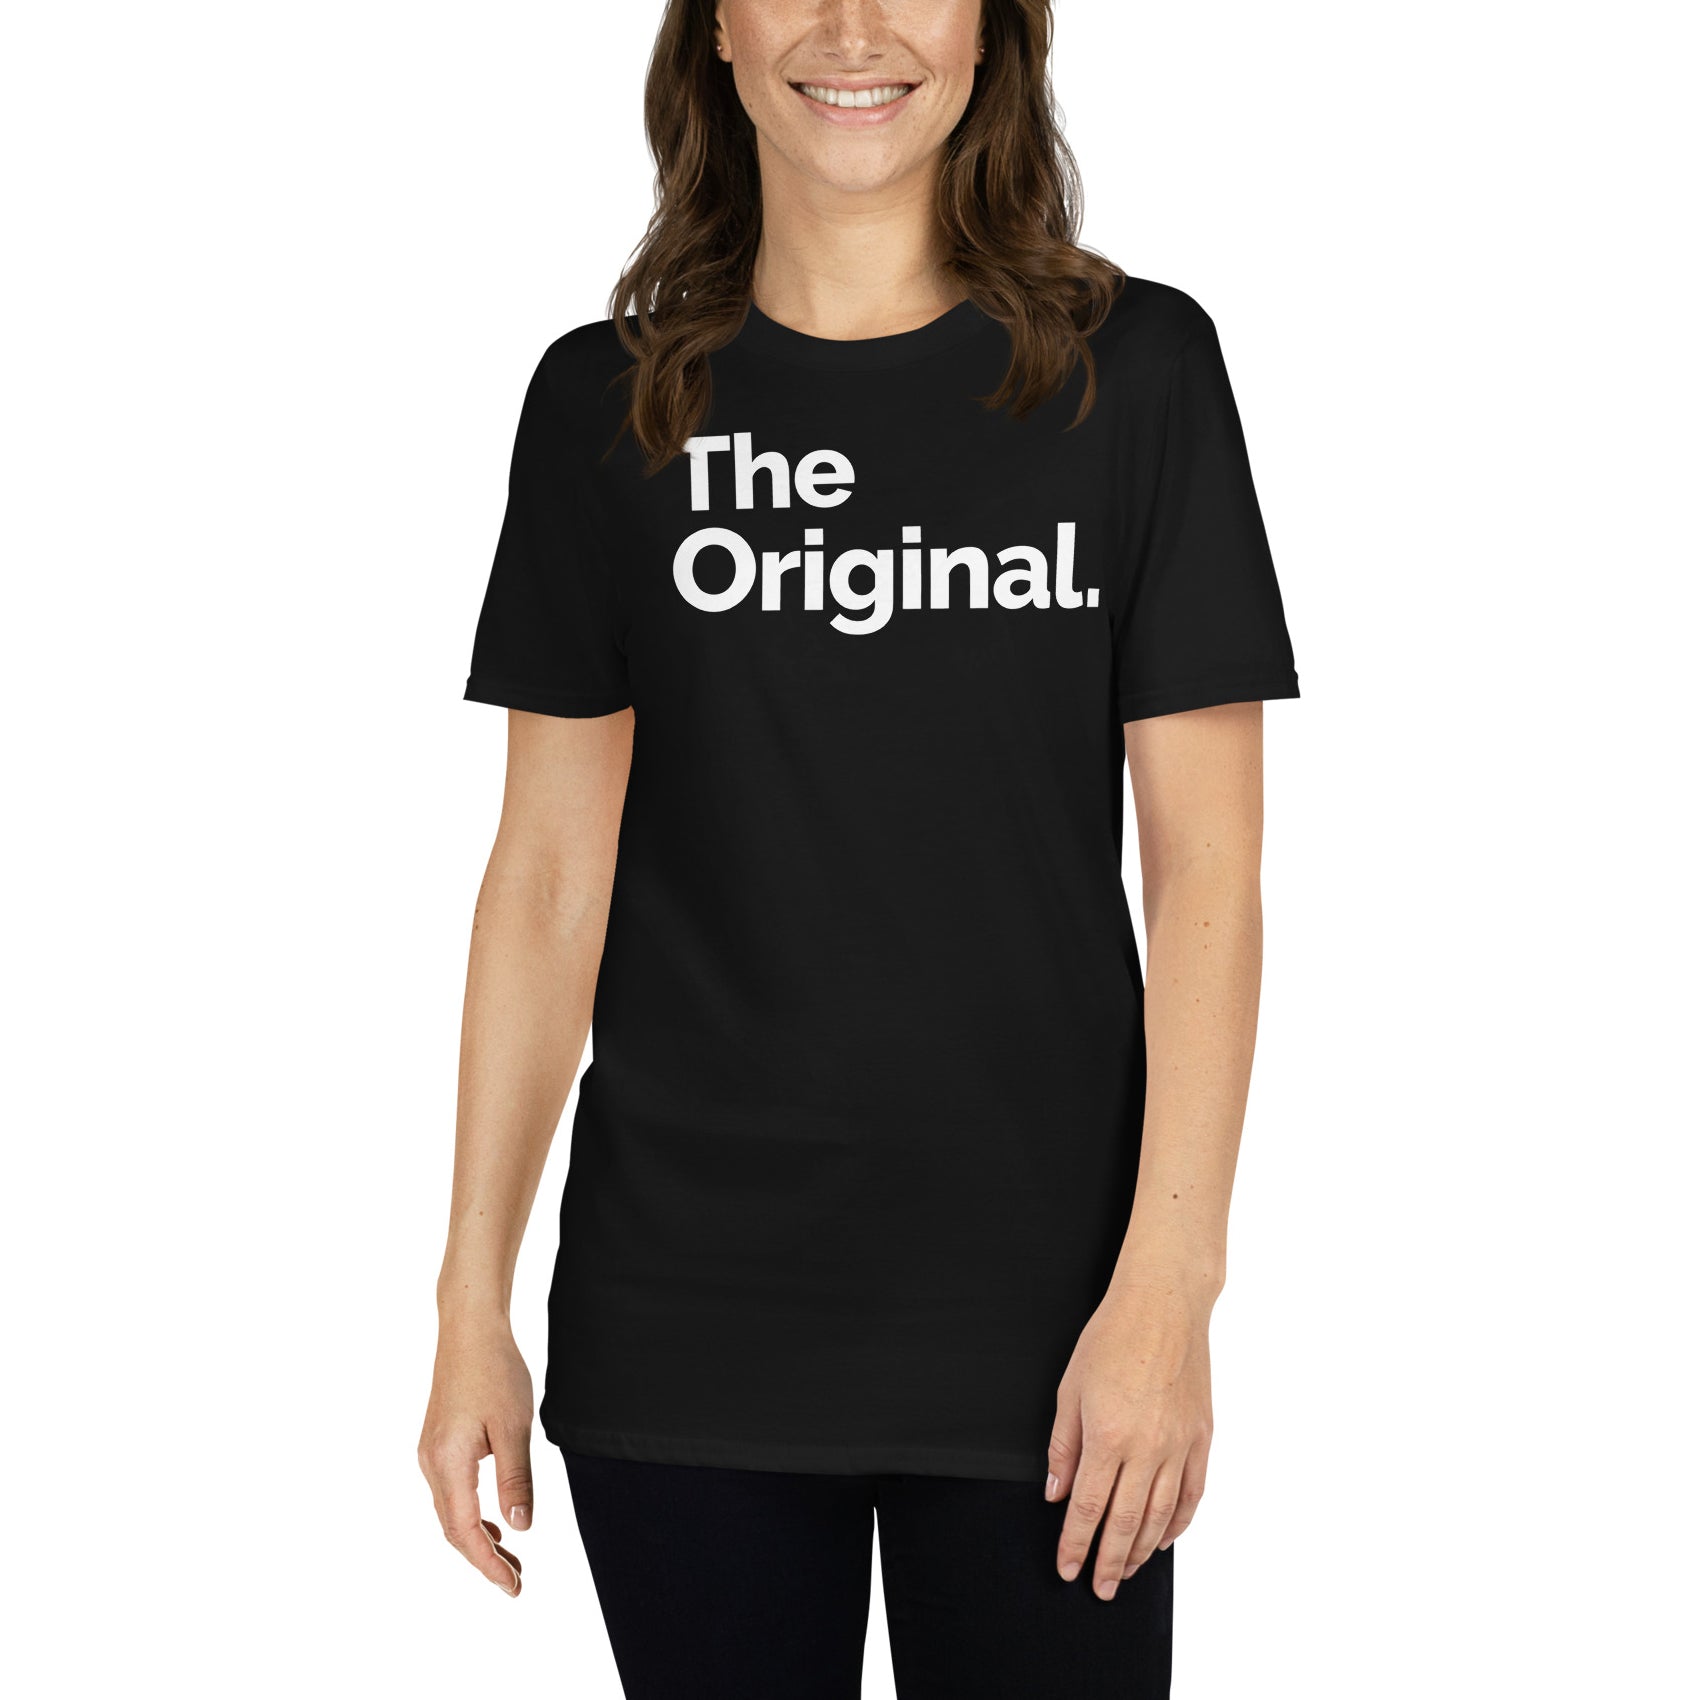 Camiseta The Original - Padres. Color Negro.